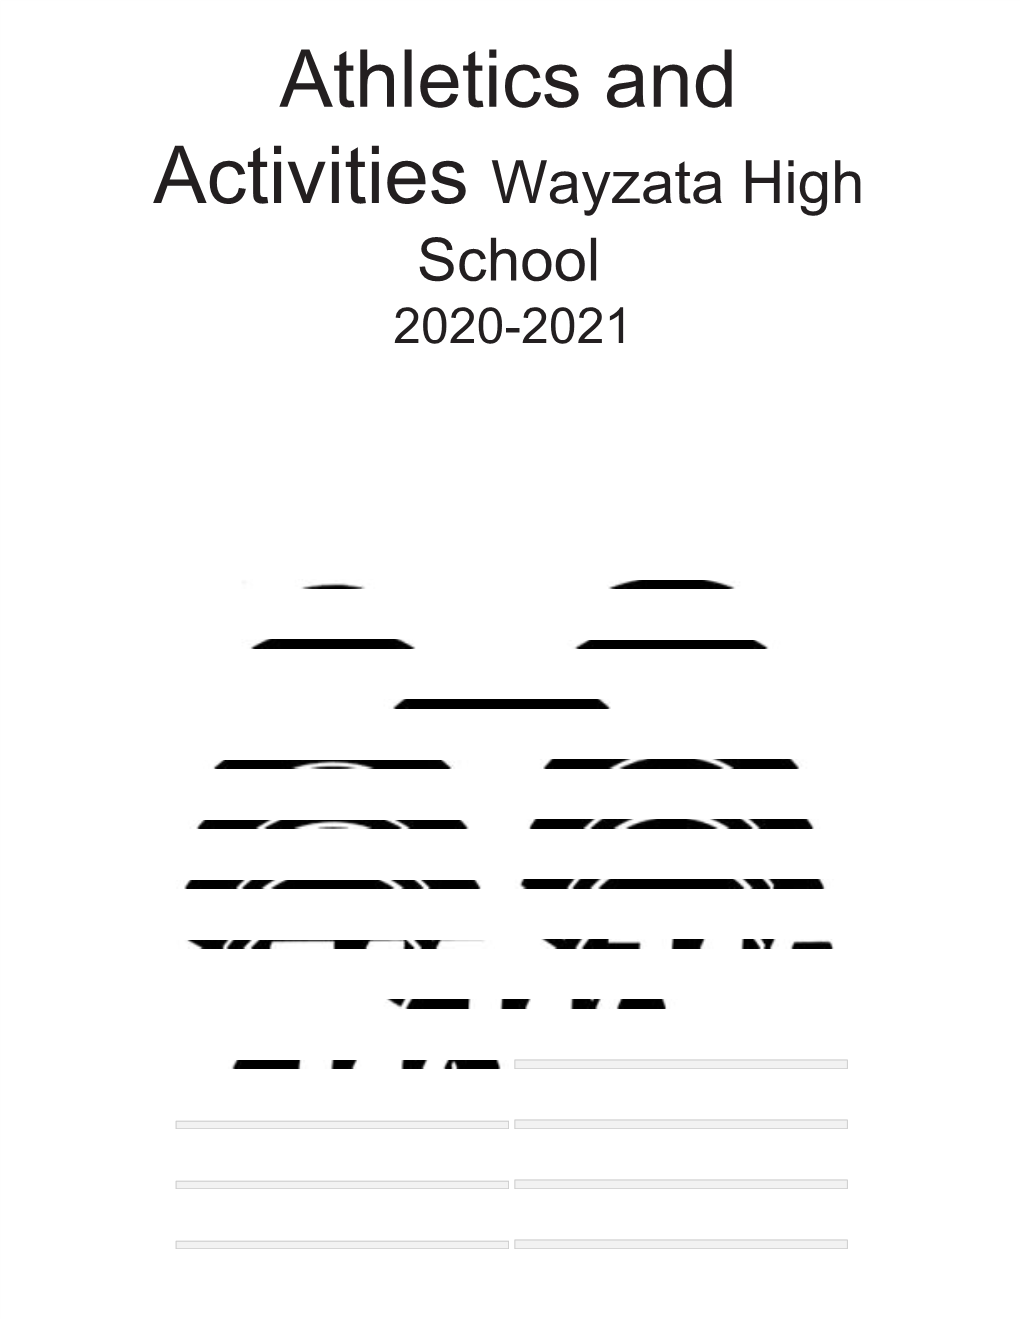 Athletics and Activities ​Wayzata High